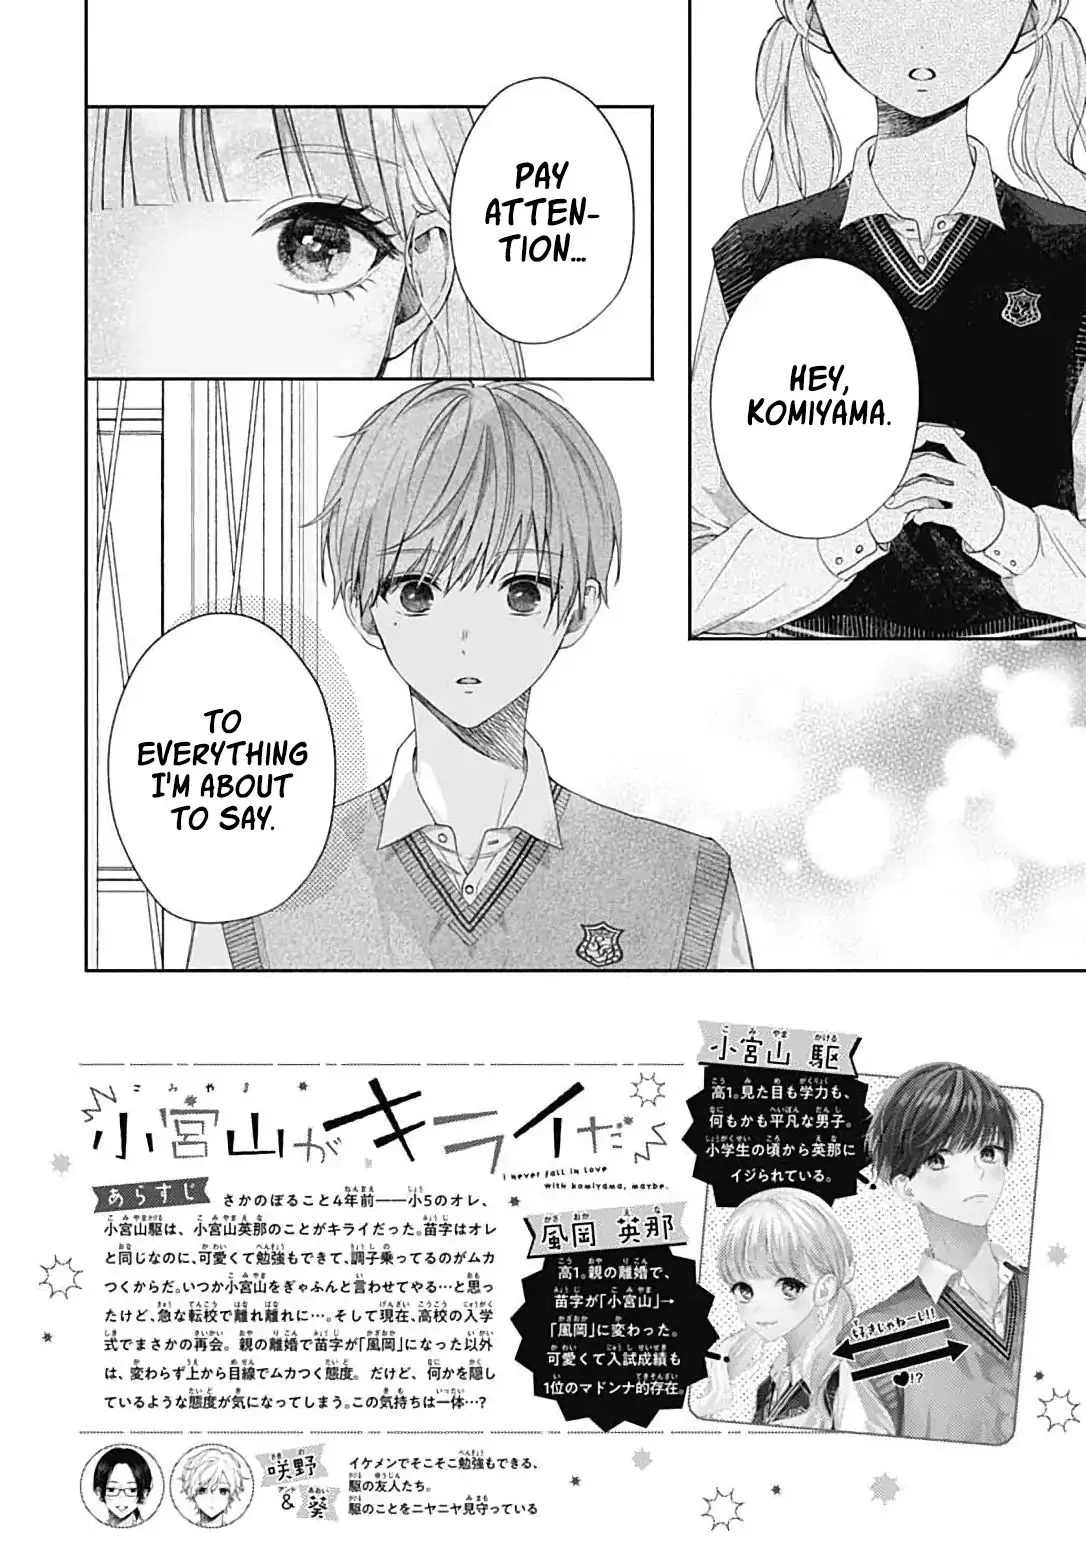 I Hate Komiyama - 2 page 3-b54acf11